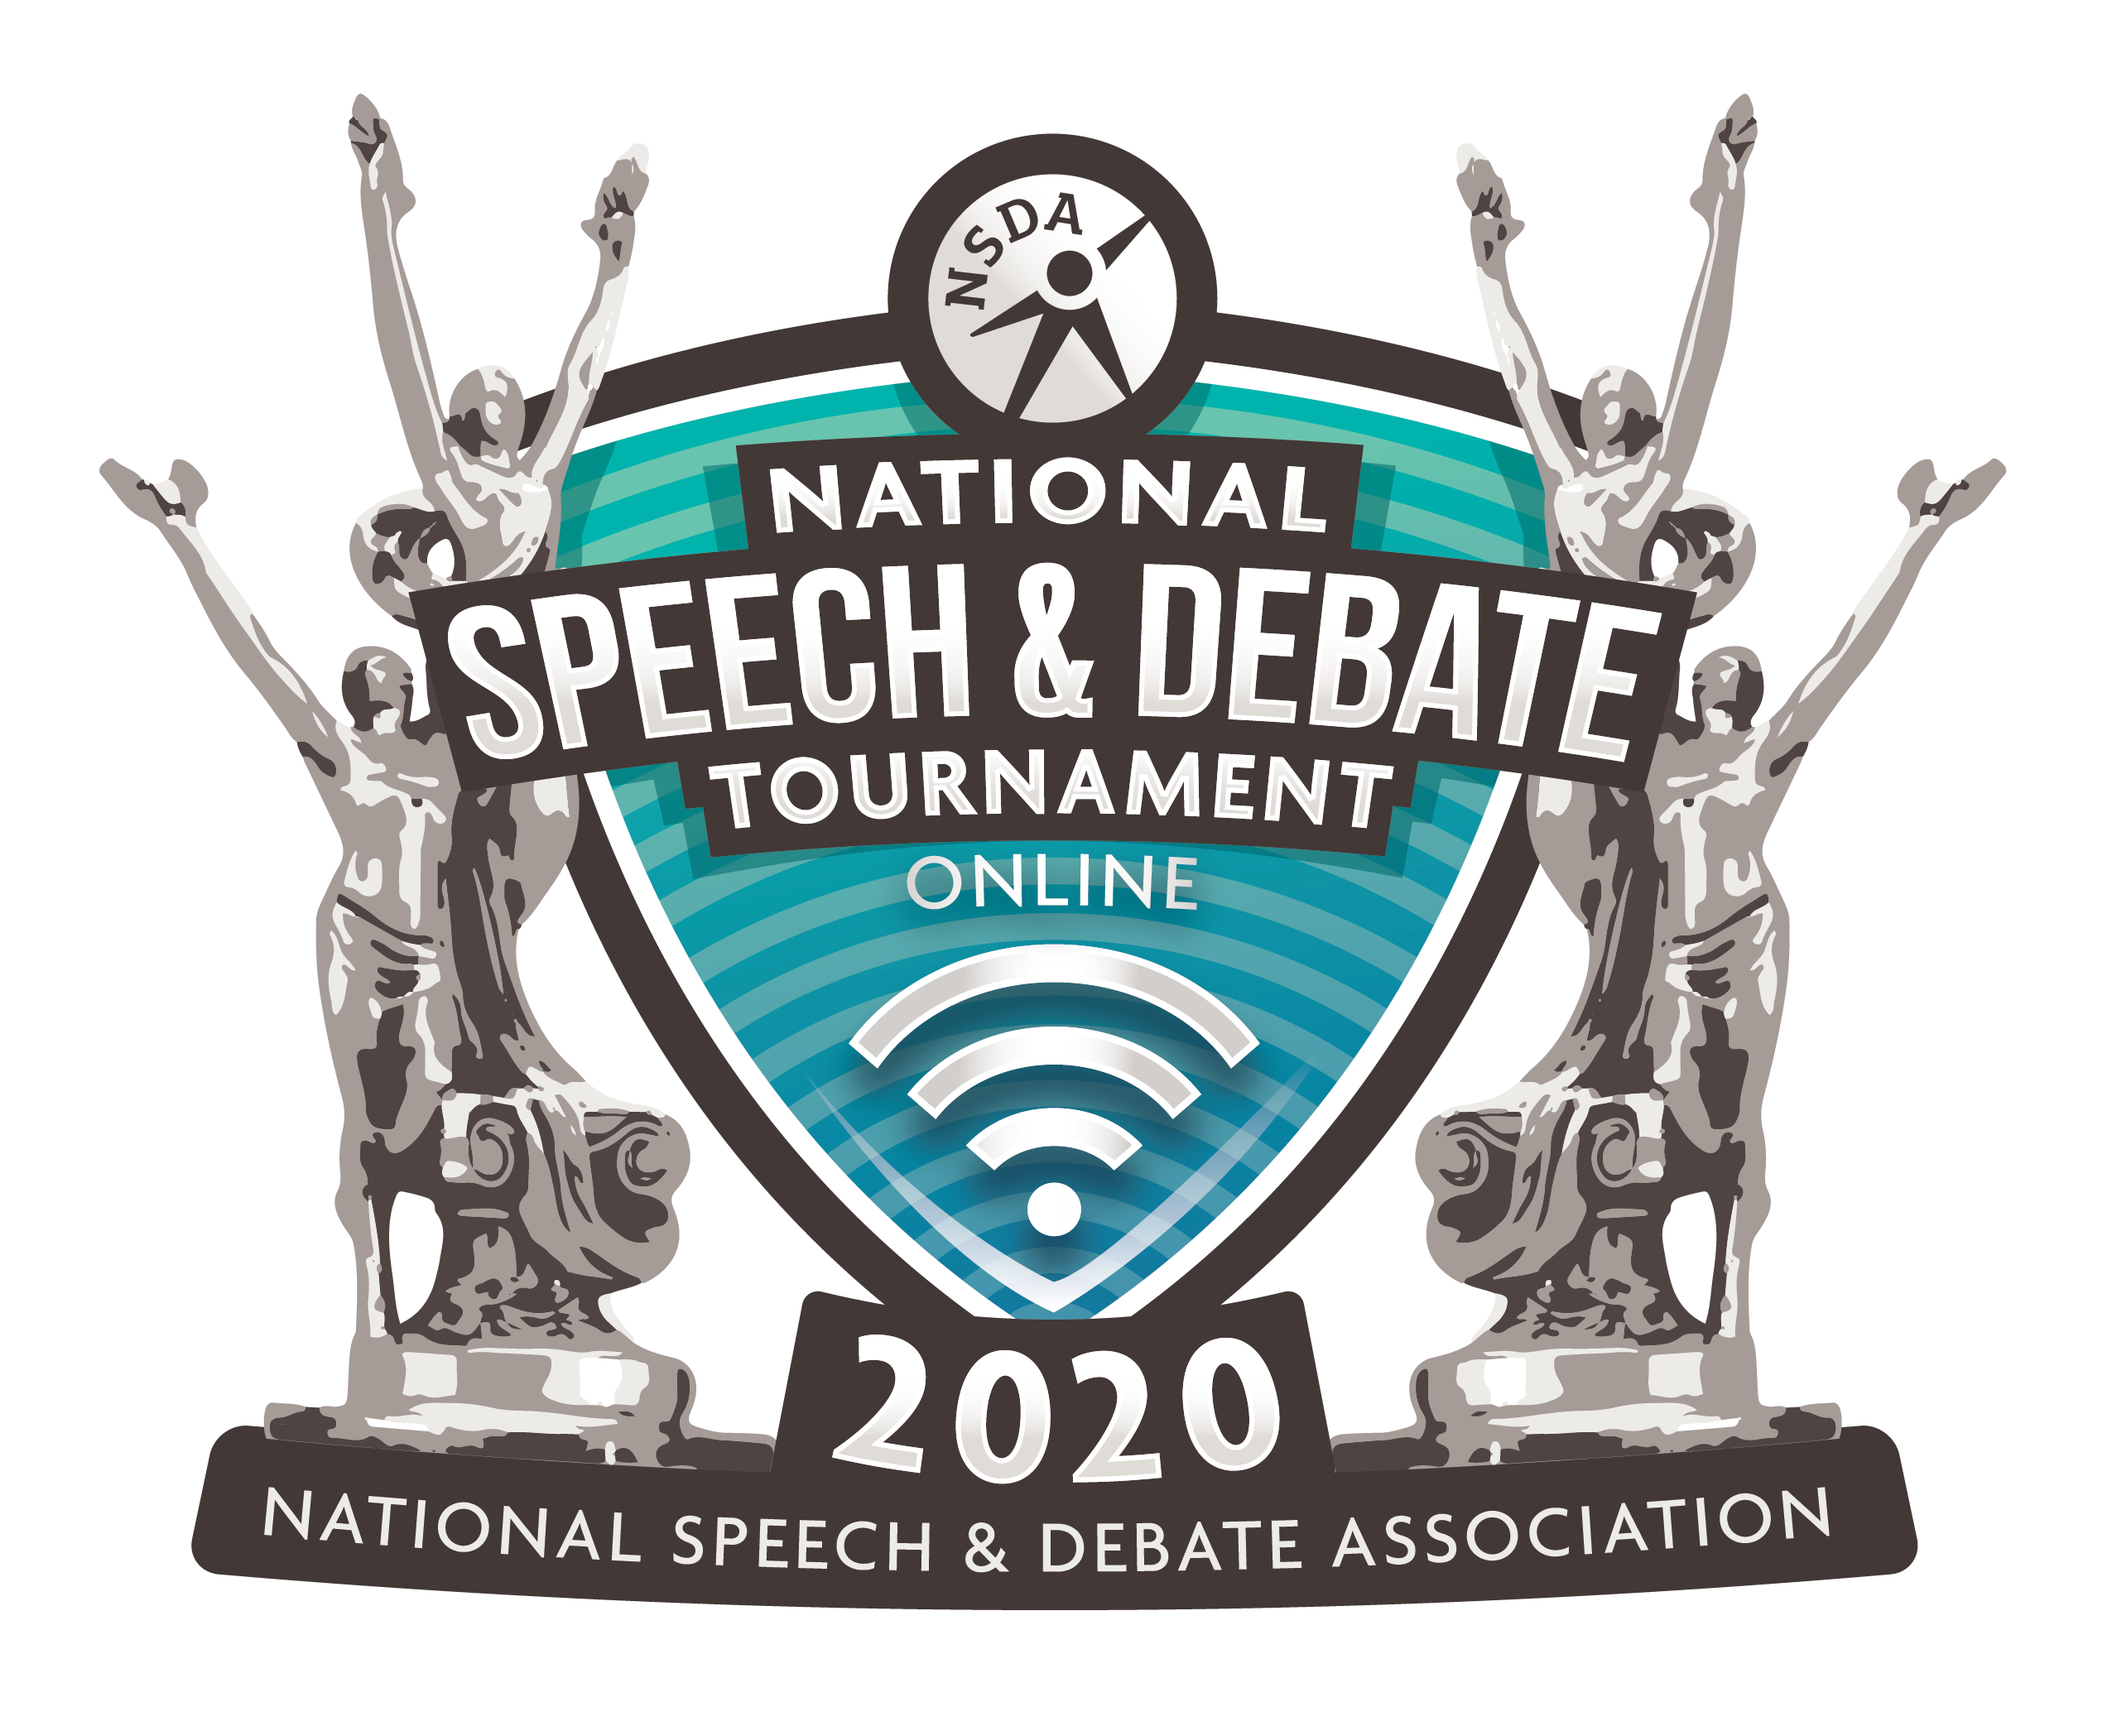 National Speech & Debate Association